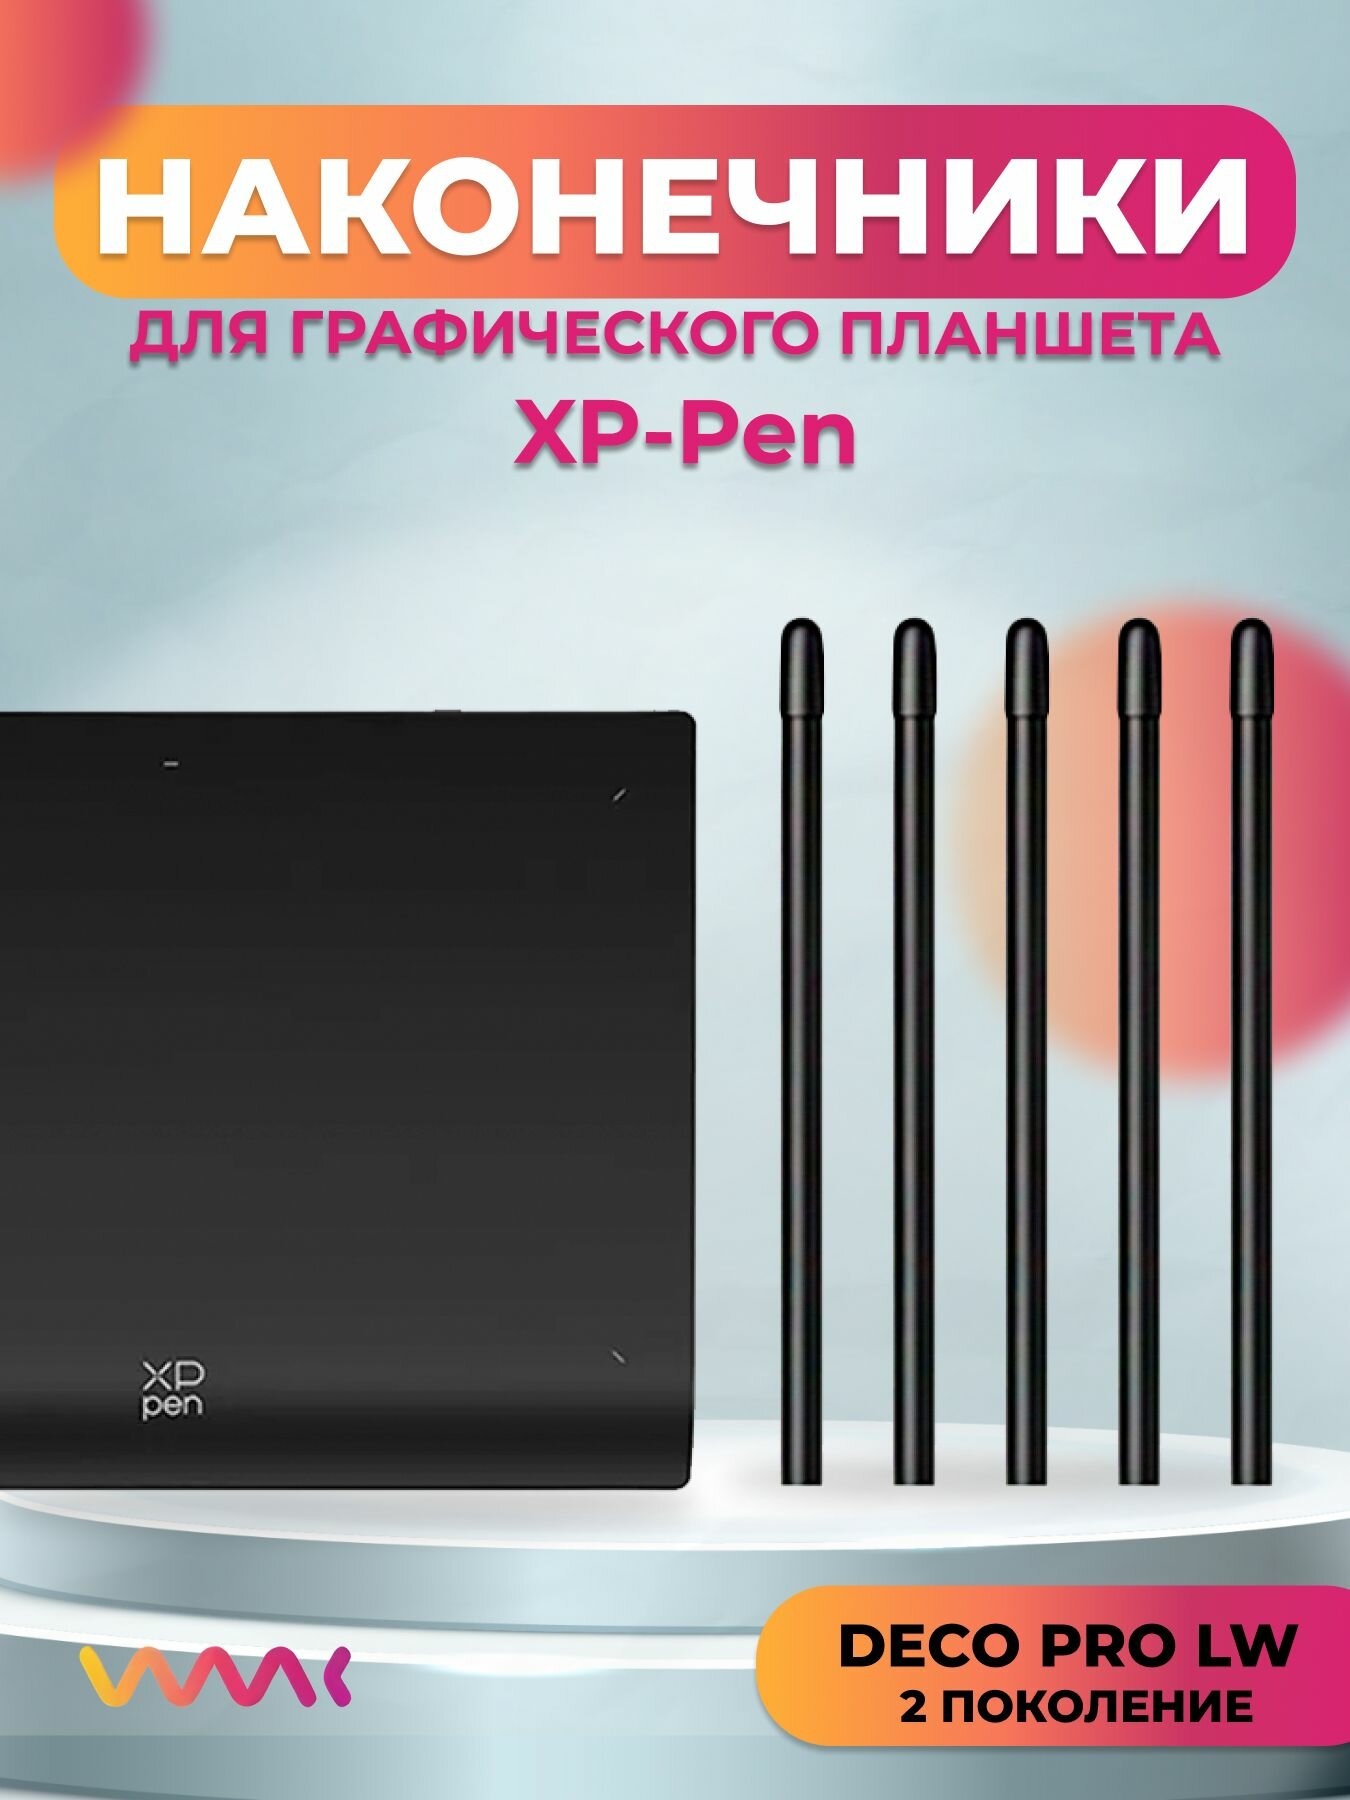 Наконечники для XP-Pen Deco Pro LW 2nd(5 шт.)